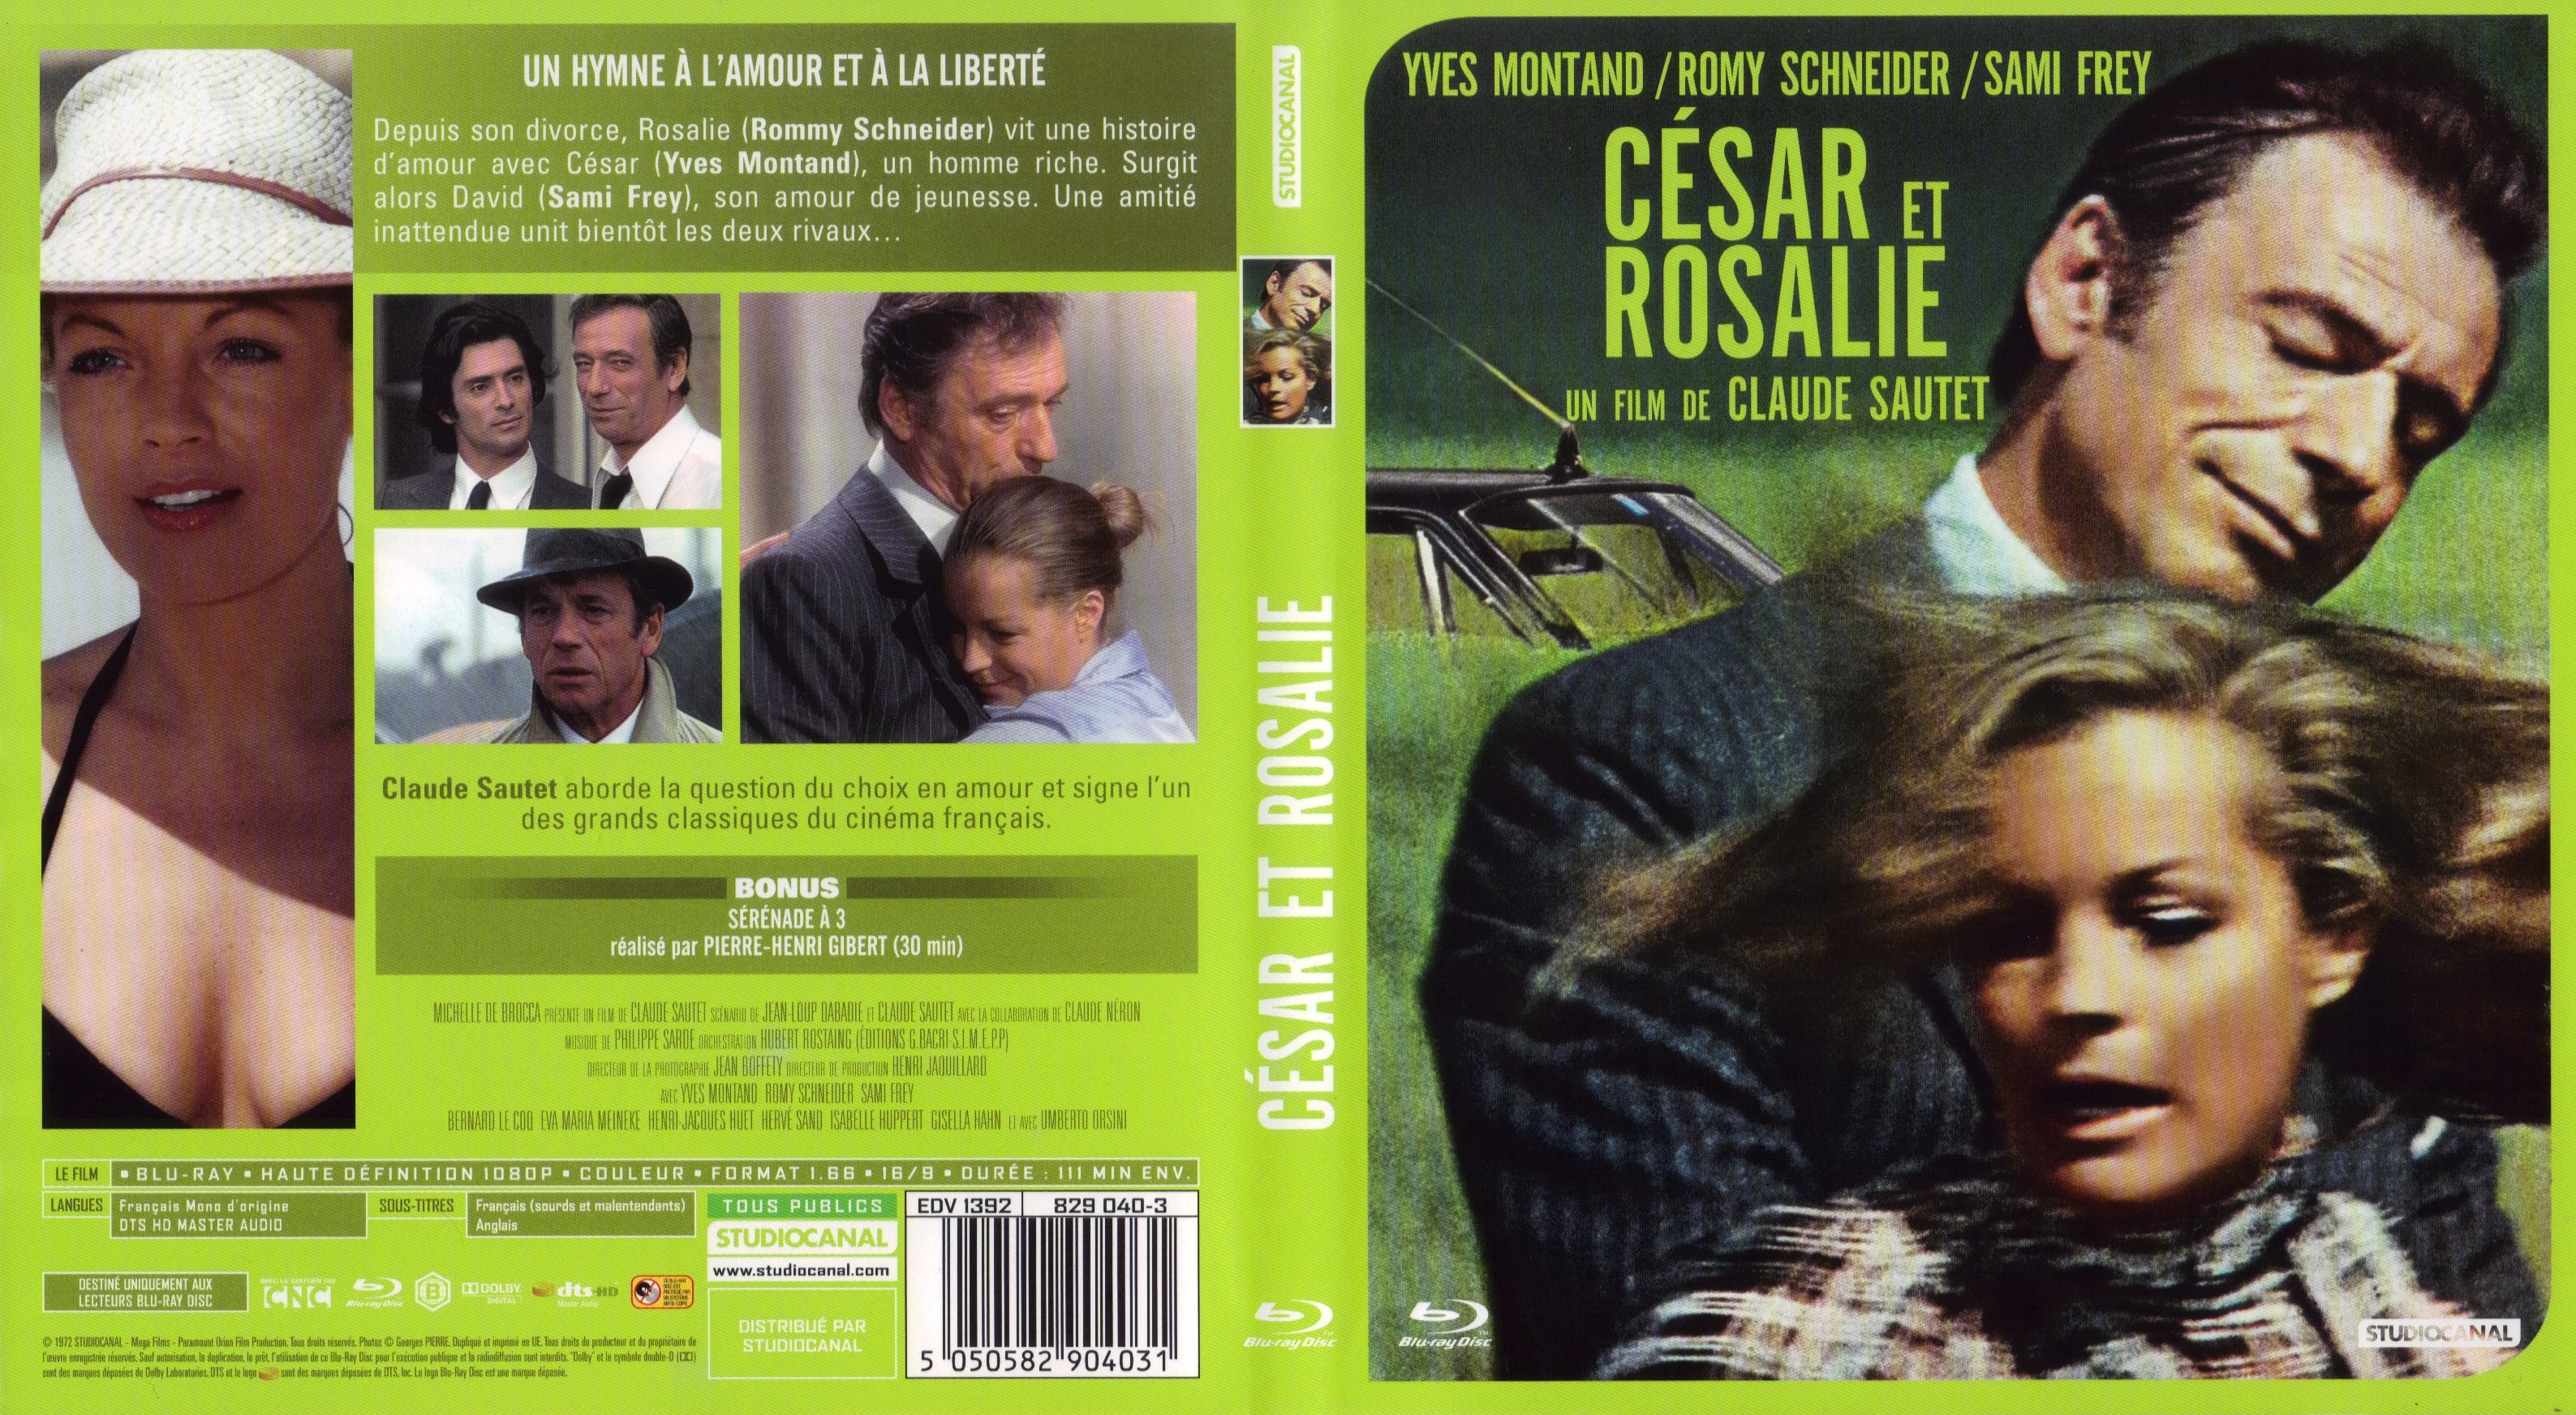 Jaquette DVD Csar et Rosalie (BLU-RAY)